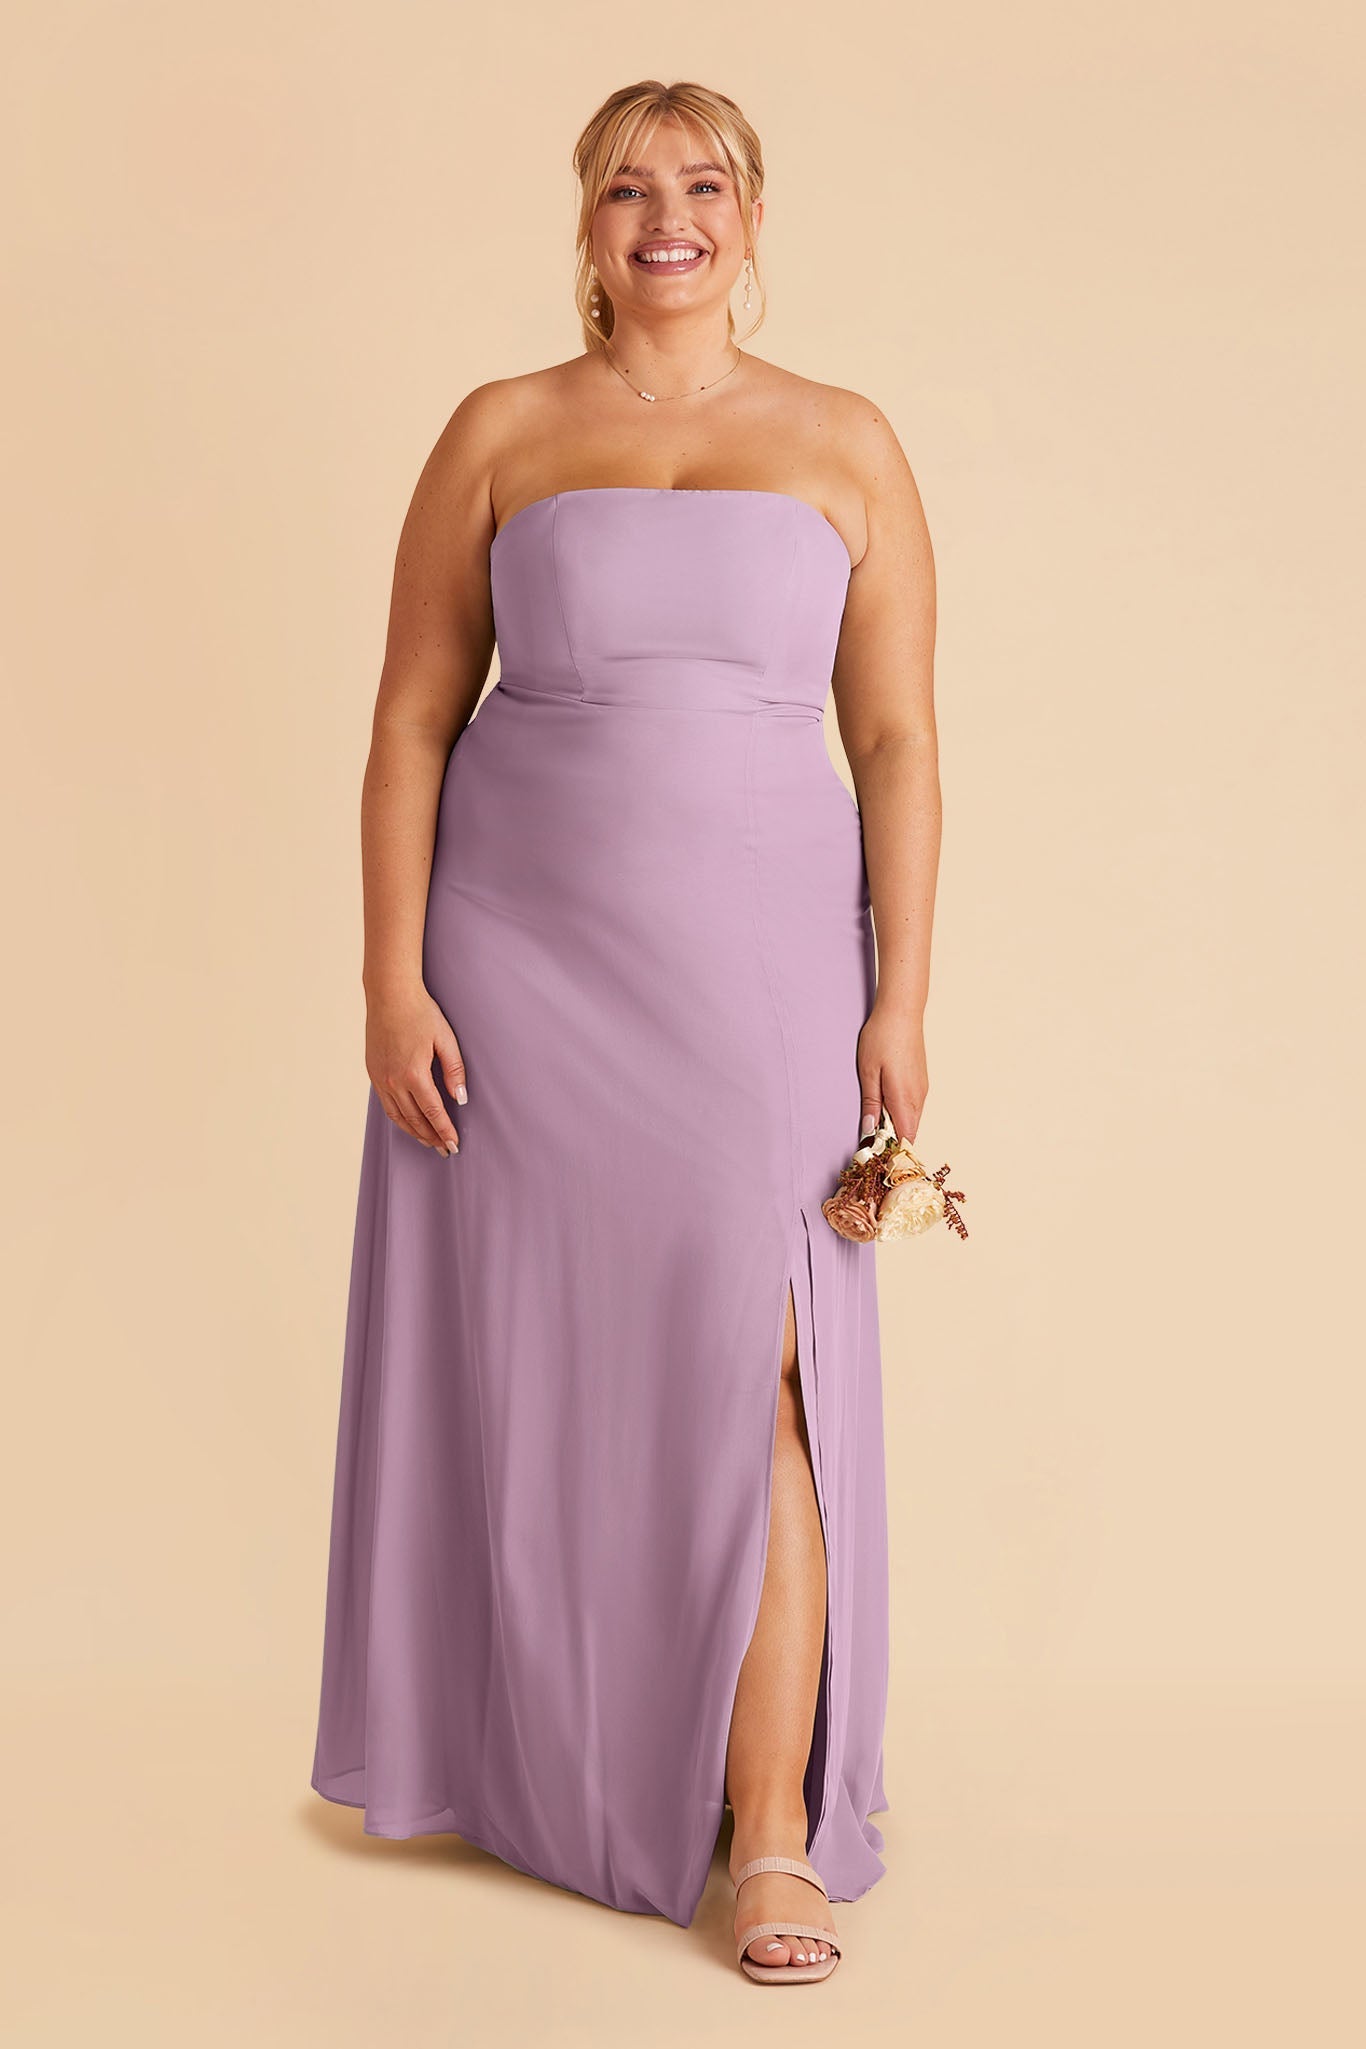 Chris Convertible Chiffon Dress - Lavender